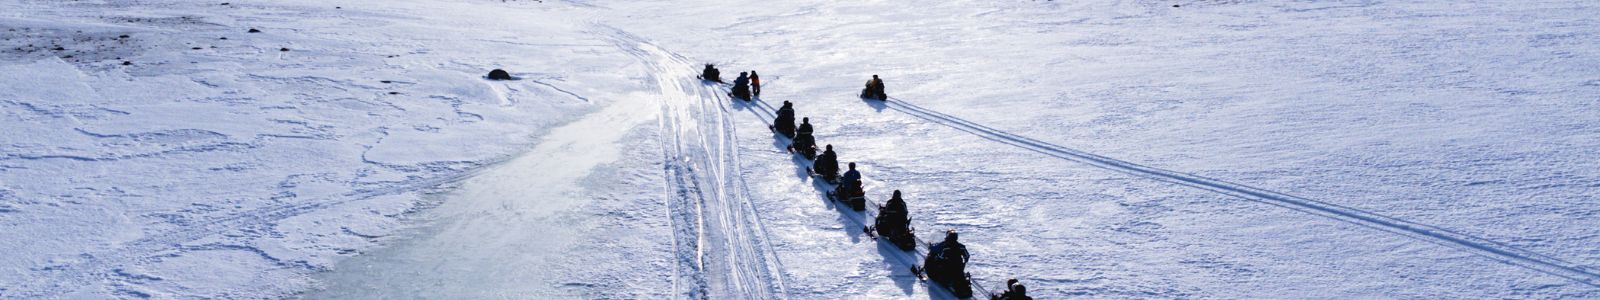 Sneeuwscooter rijden in IJsland